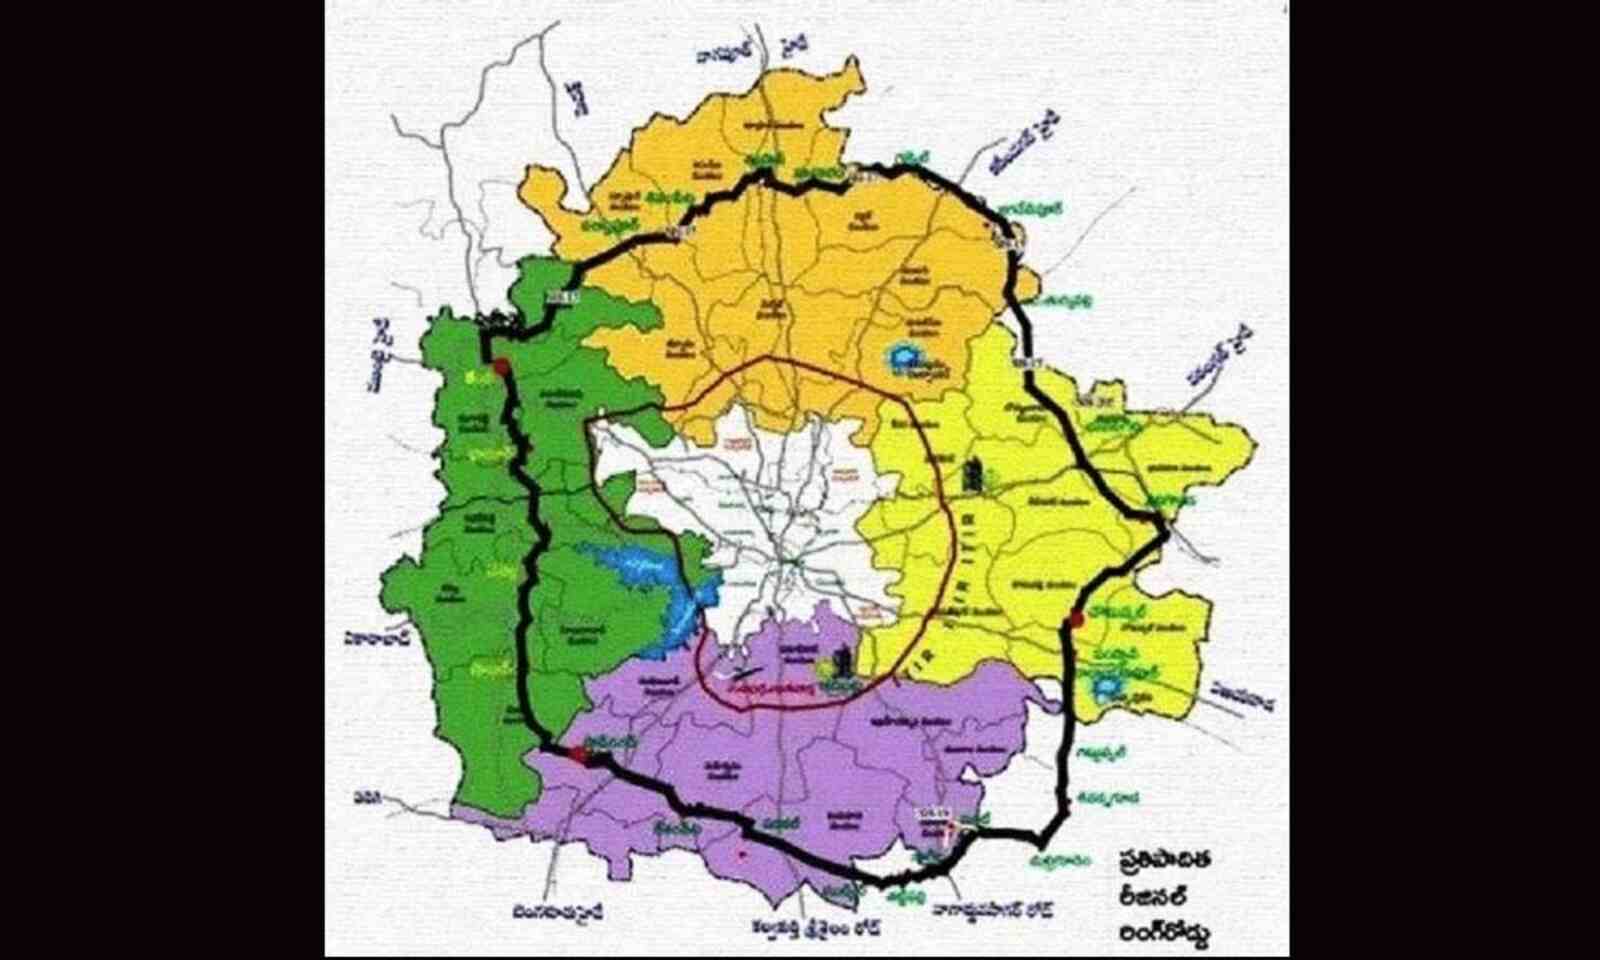 Regional Ring Road Hyderabad - RRR Master Plan